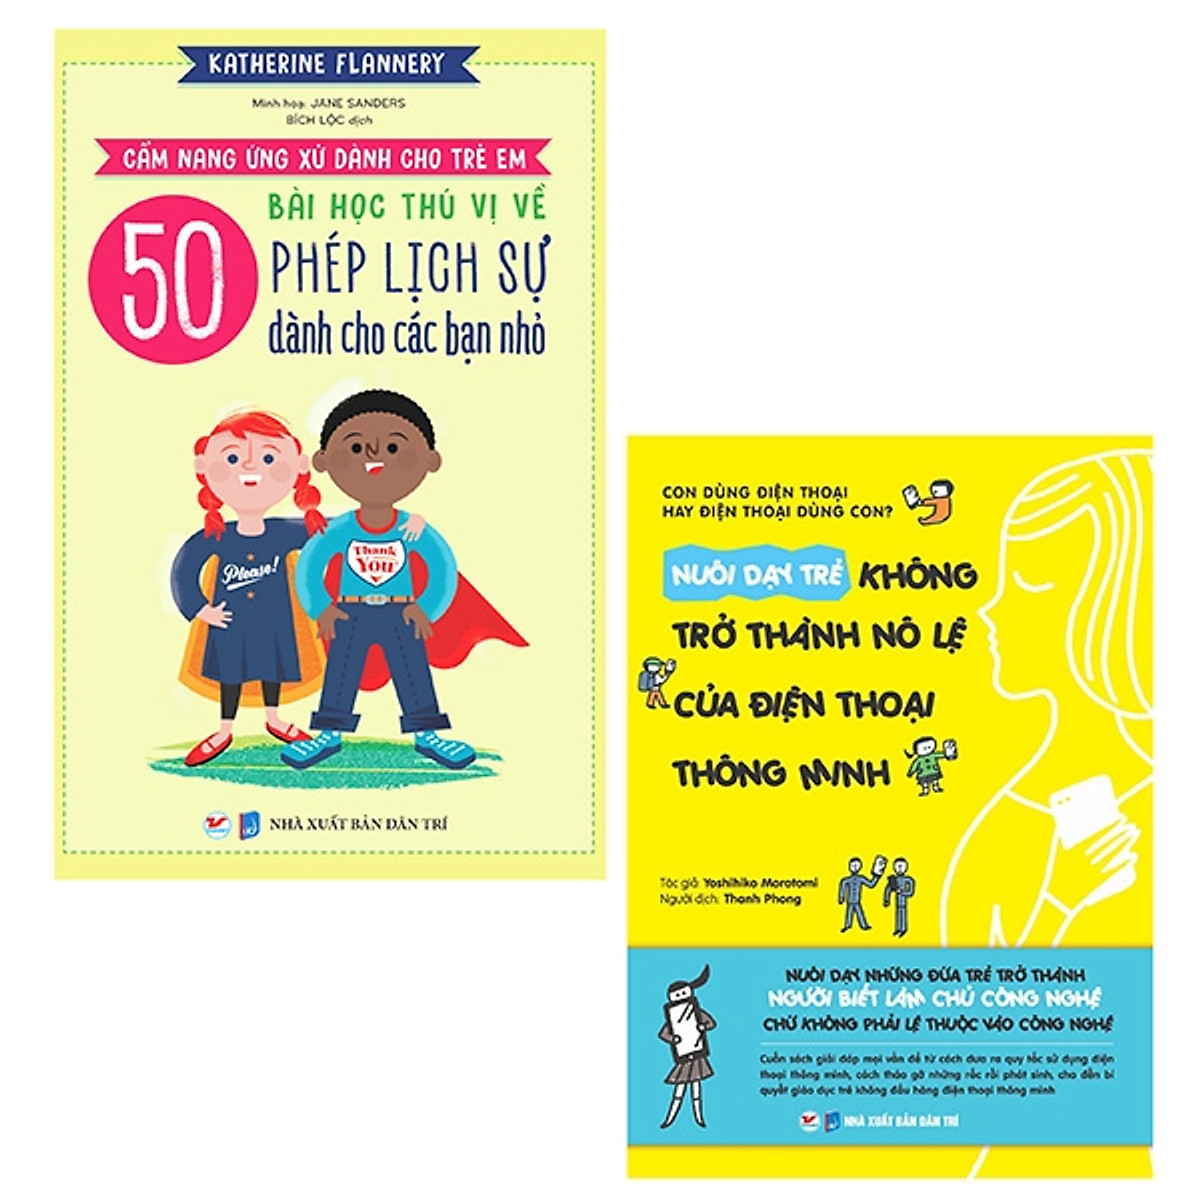 Bộ Sách Cẩm Nang Ứng Xử Dành Cho Trẻ Em: 50 Bài Học Thú Vị Về Phép Lịch Sự Dành Cho Các Bạn Nhỏ + Nuôi Dạy Trẻ Không Trở Thành Nô Lệ Của Điện Thoại Thông Minh (Bộ 2 Cuốn)